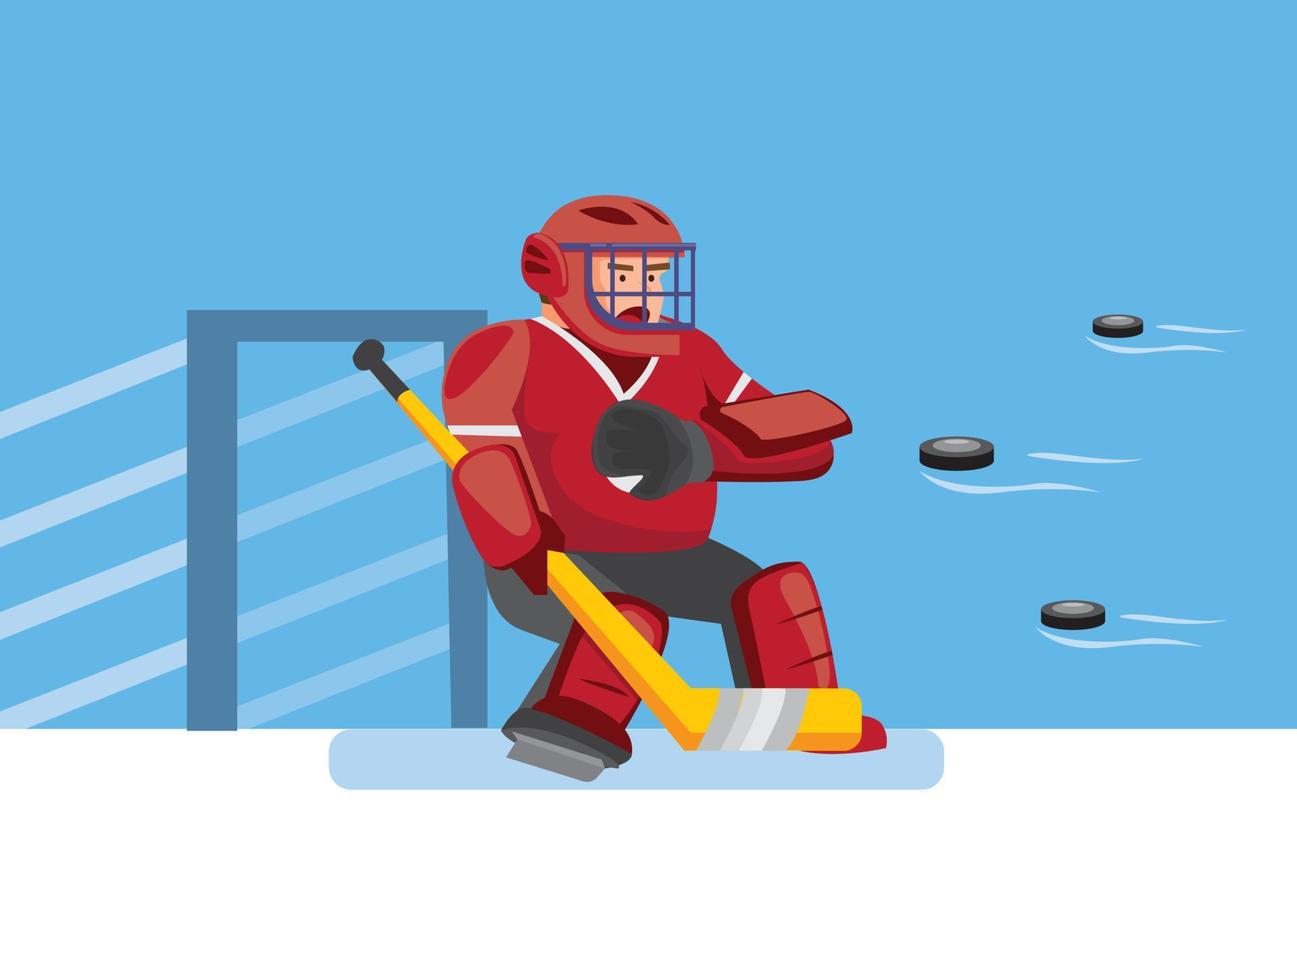 gardien de but de hockey sur glace essaie d'attraper de nombreuses rondelles, personnage de gardien de hockey dans un jeu de sport de hockey sur glace avec un fond bleu dans un vecteur modifiable d'illustration plate de dessin animé